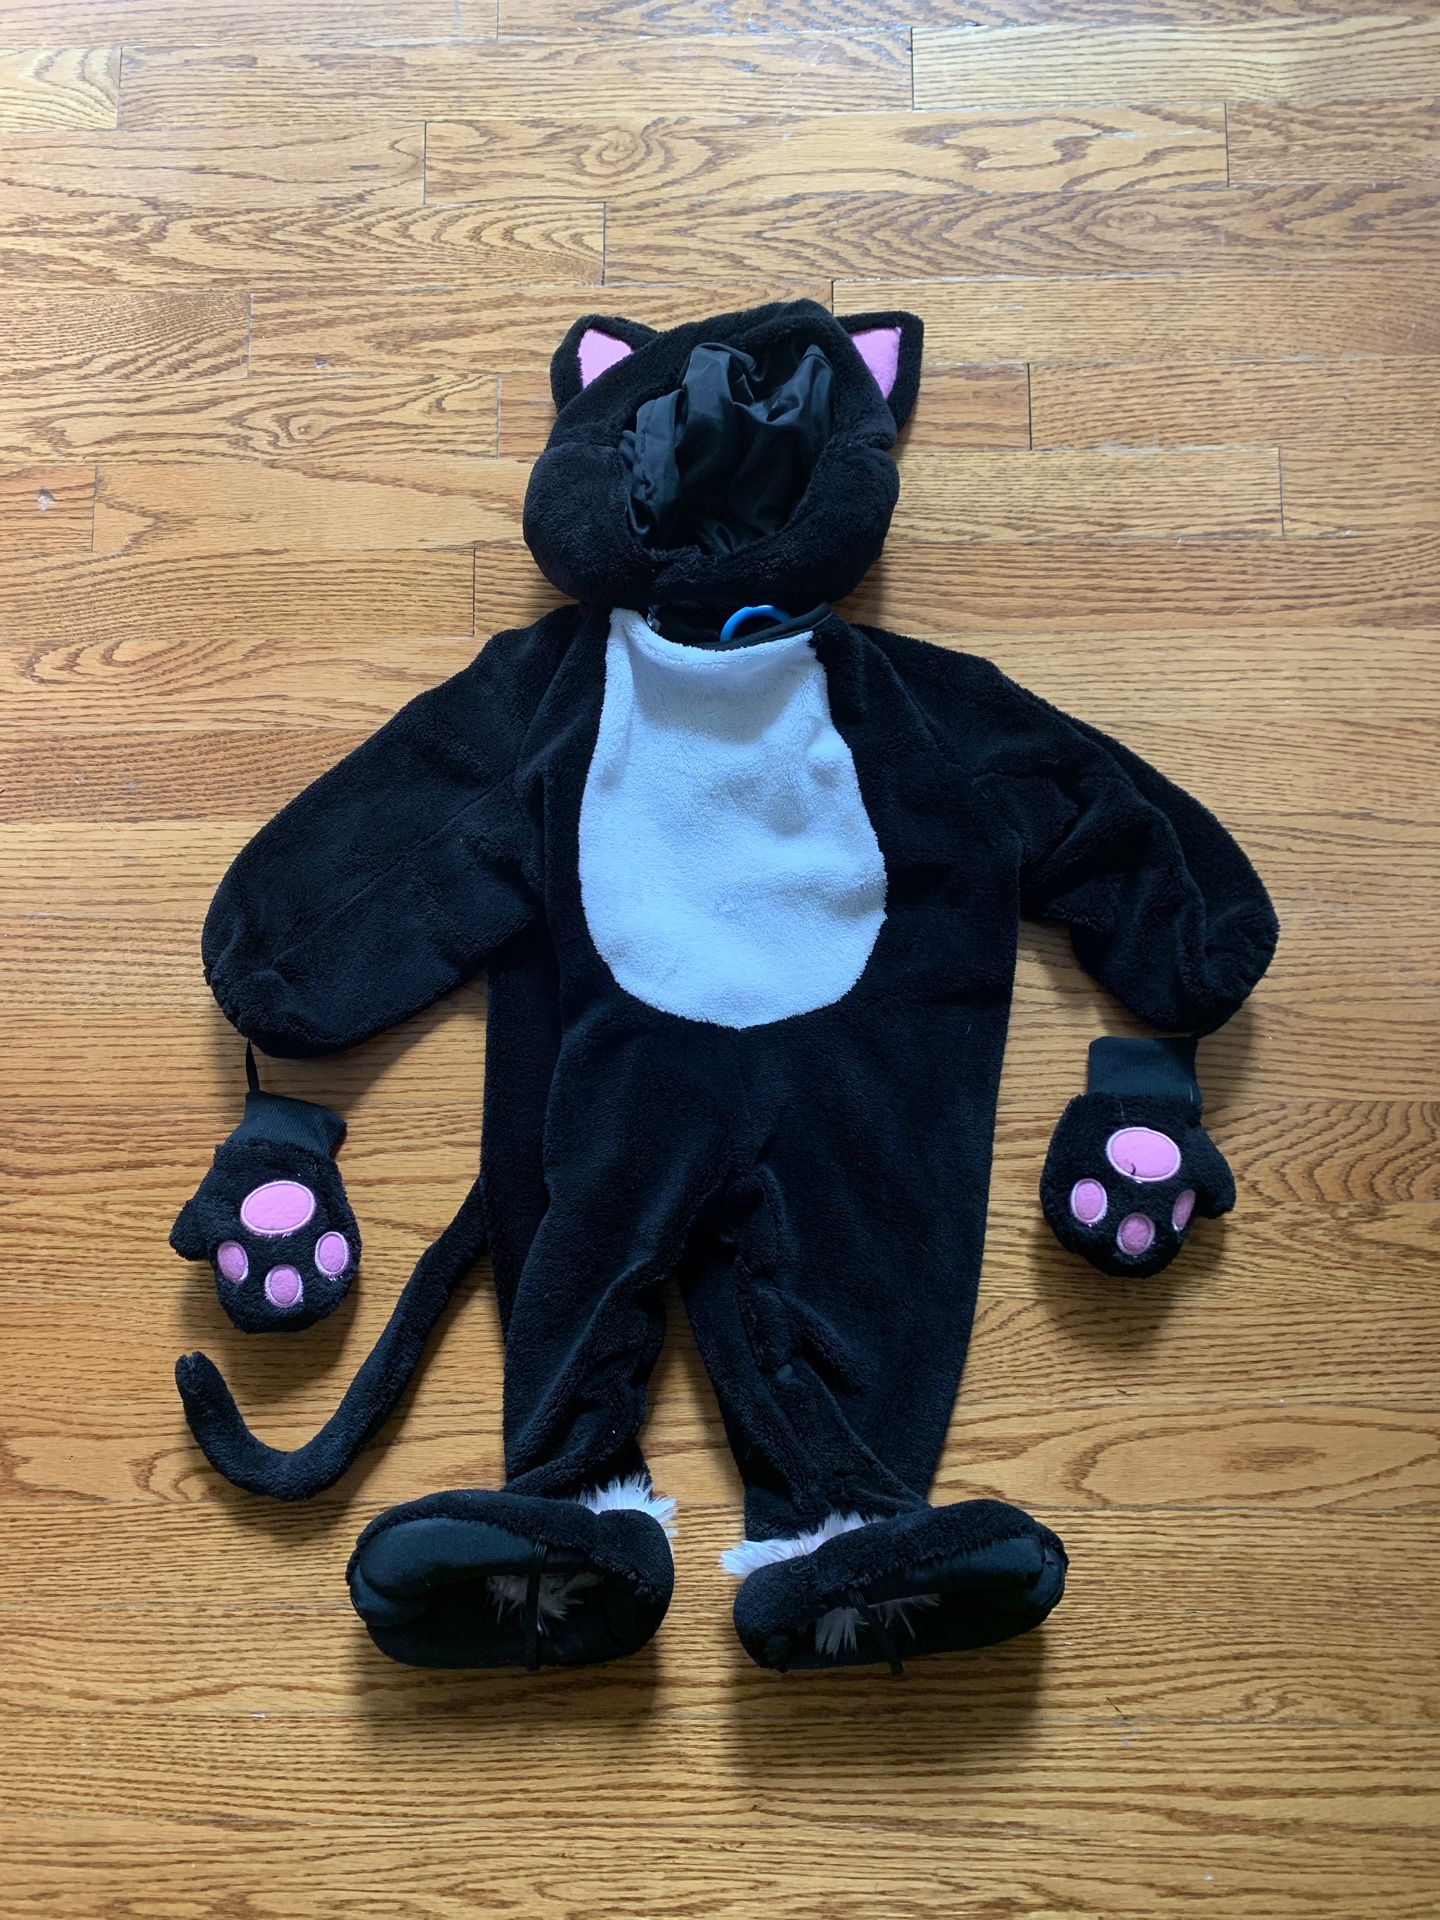 Kitty cat Halloween costume